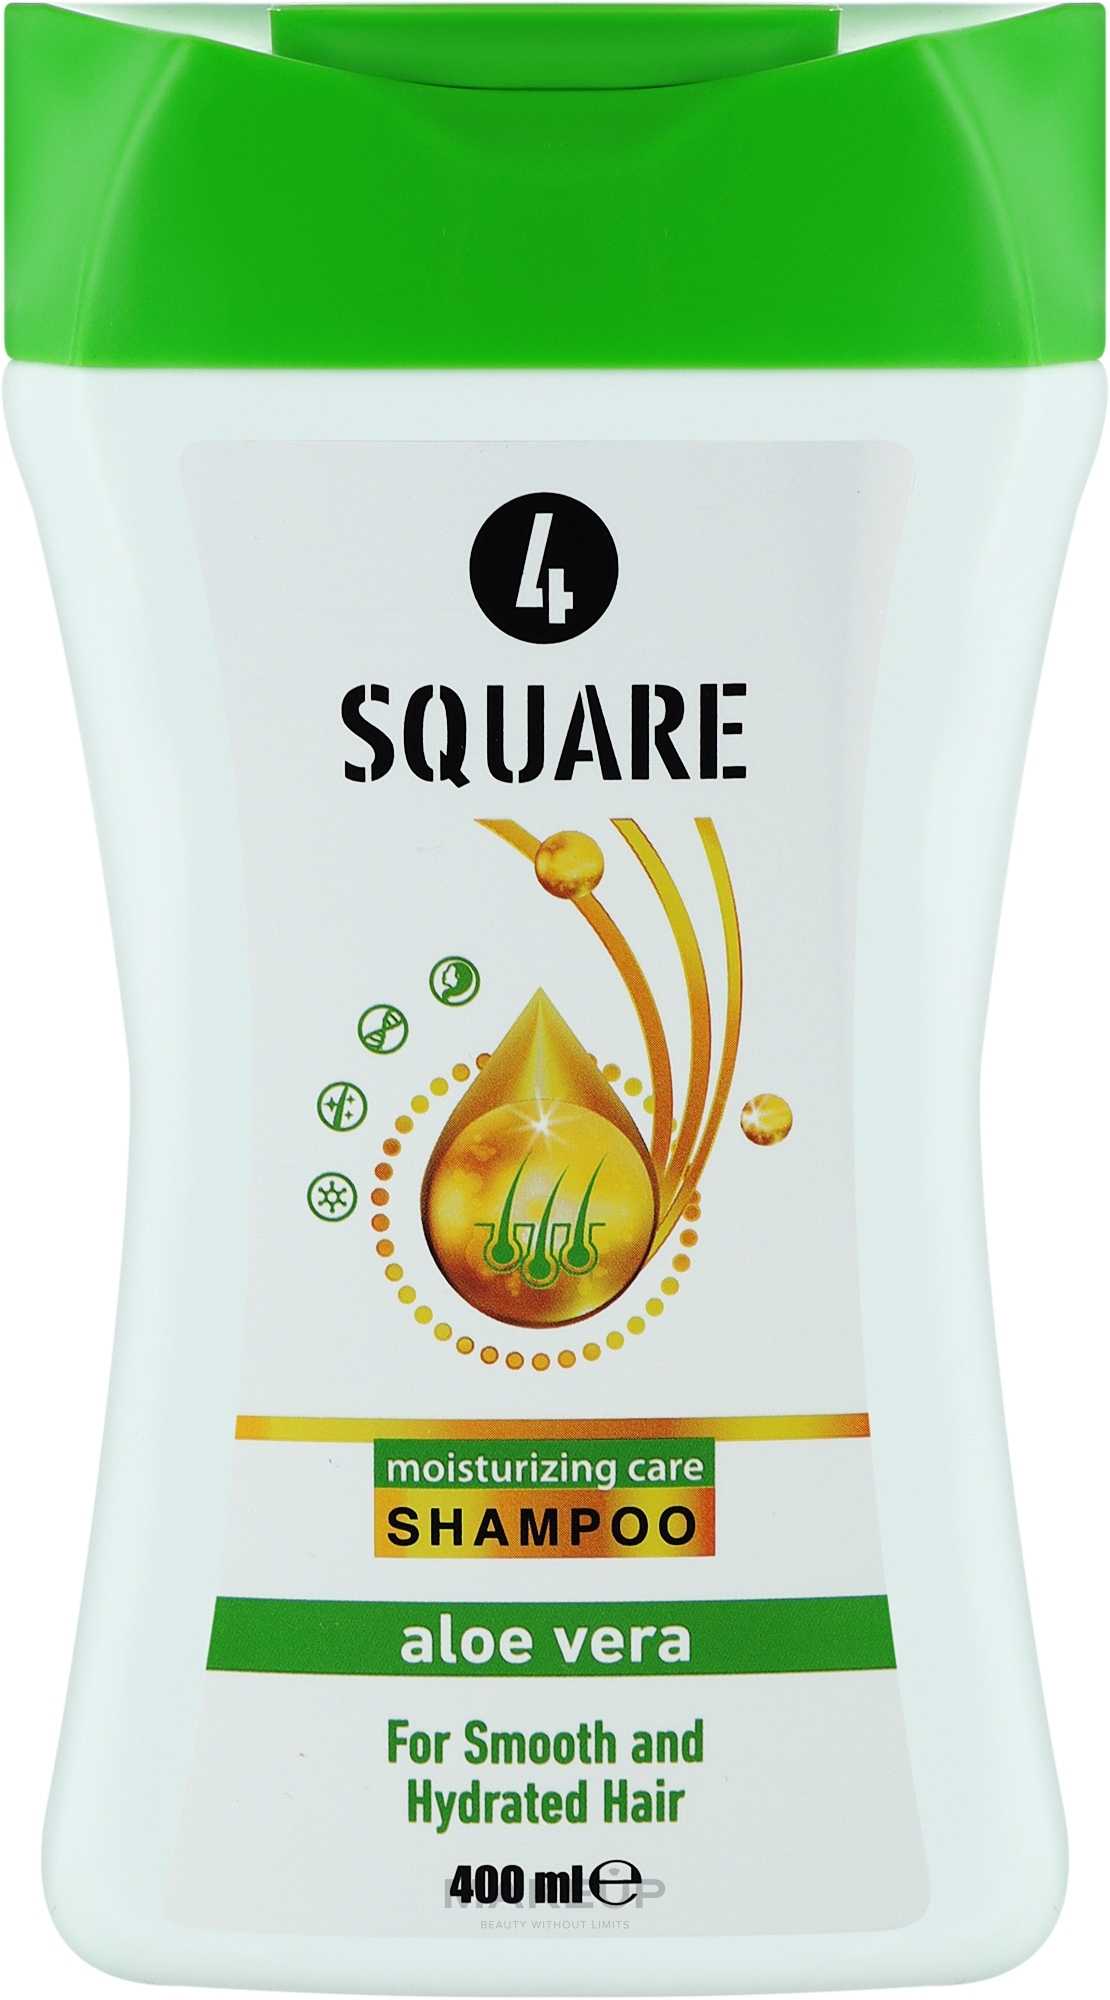 Разглаживающий шампунь для волос "Алоэ Вера" - 4 Square — фото 400ml